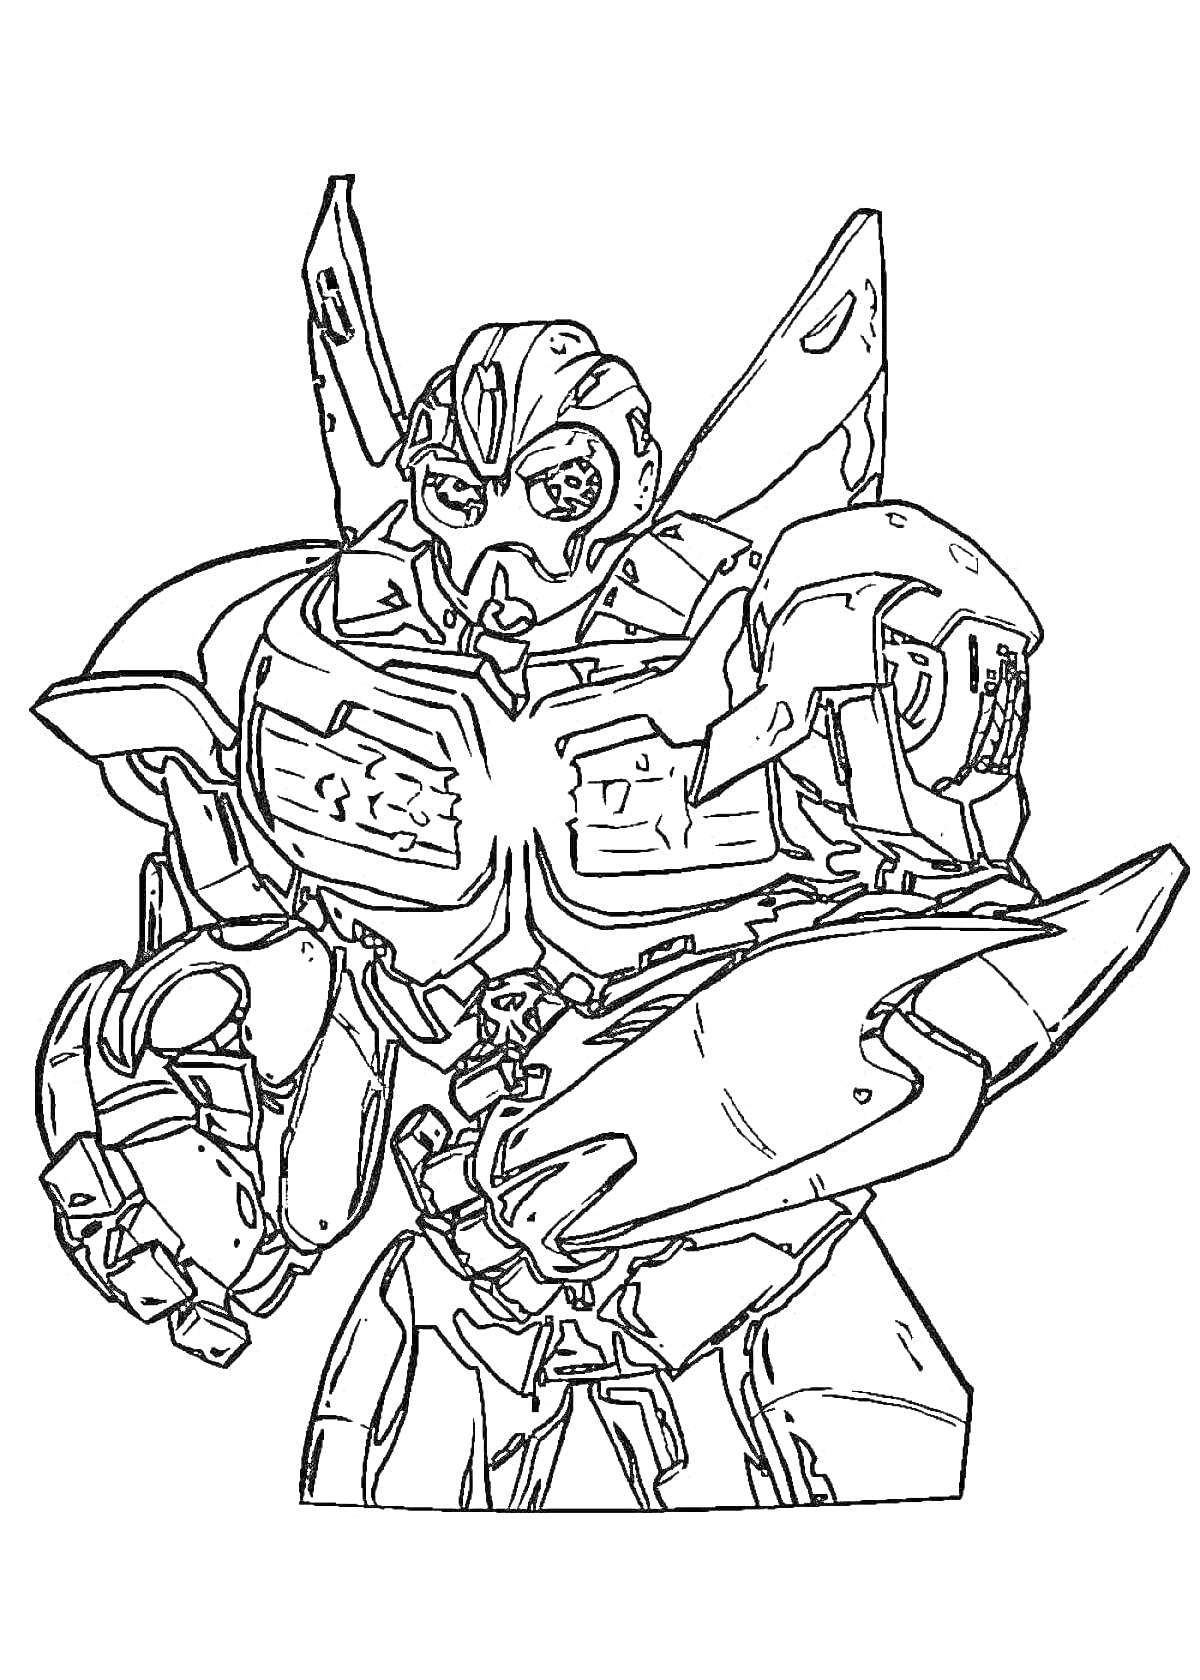 Раскраска Раскраска с изображением Бамблби, персонажа-трансформера, в боевой стойке с поднятым кулаком и раскрашенными деталями на груди и плечах.